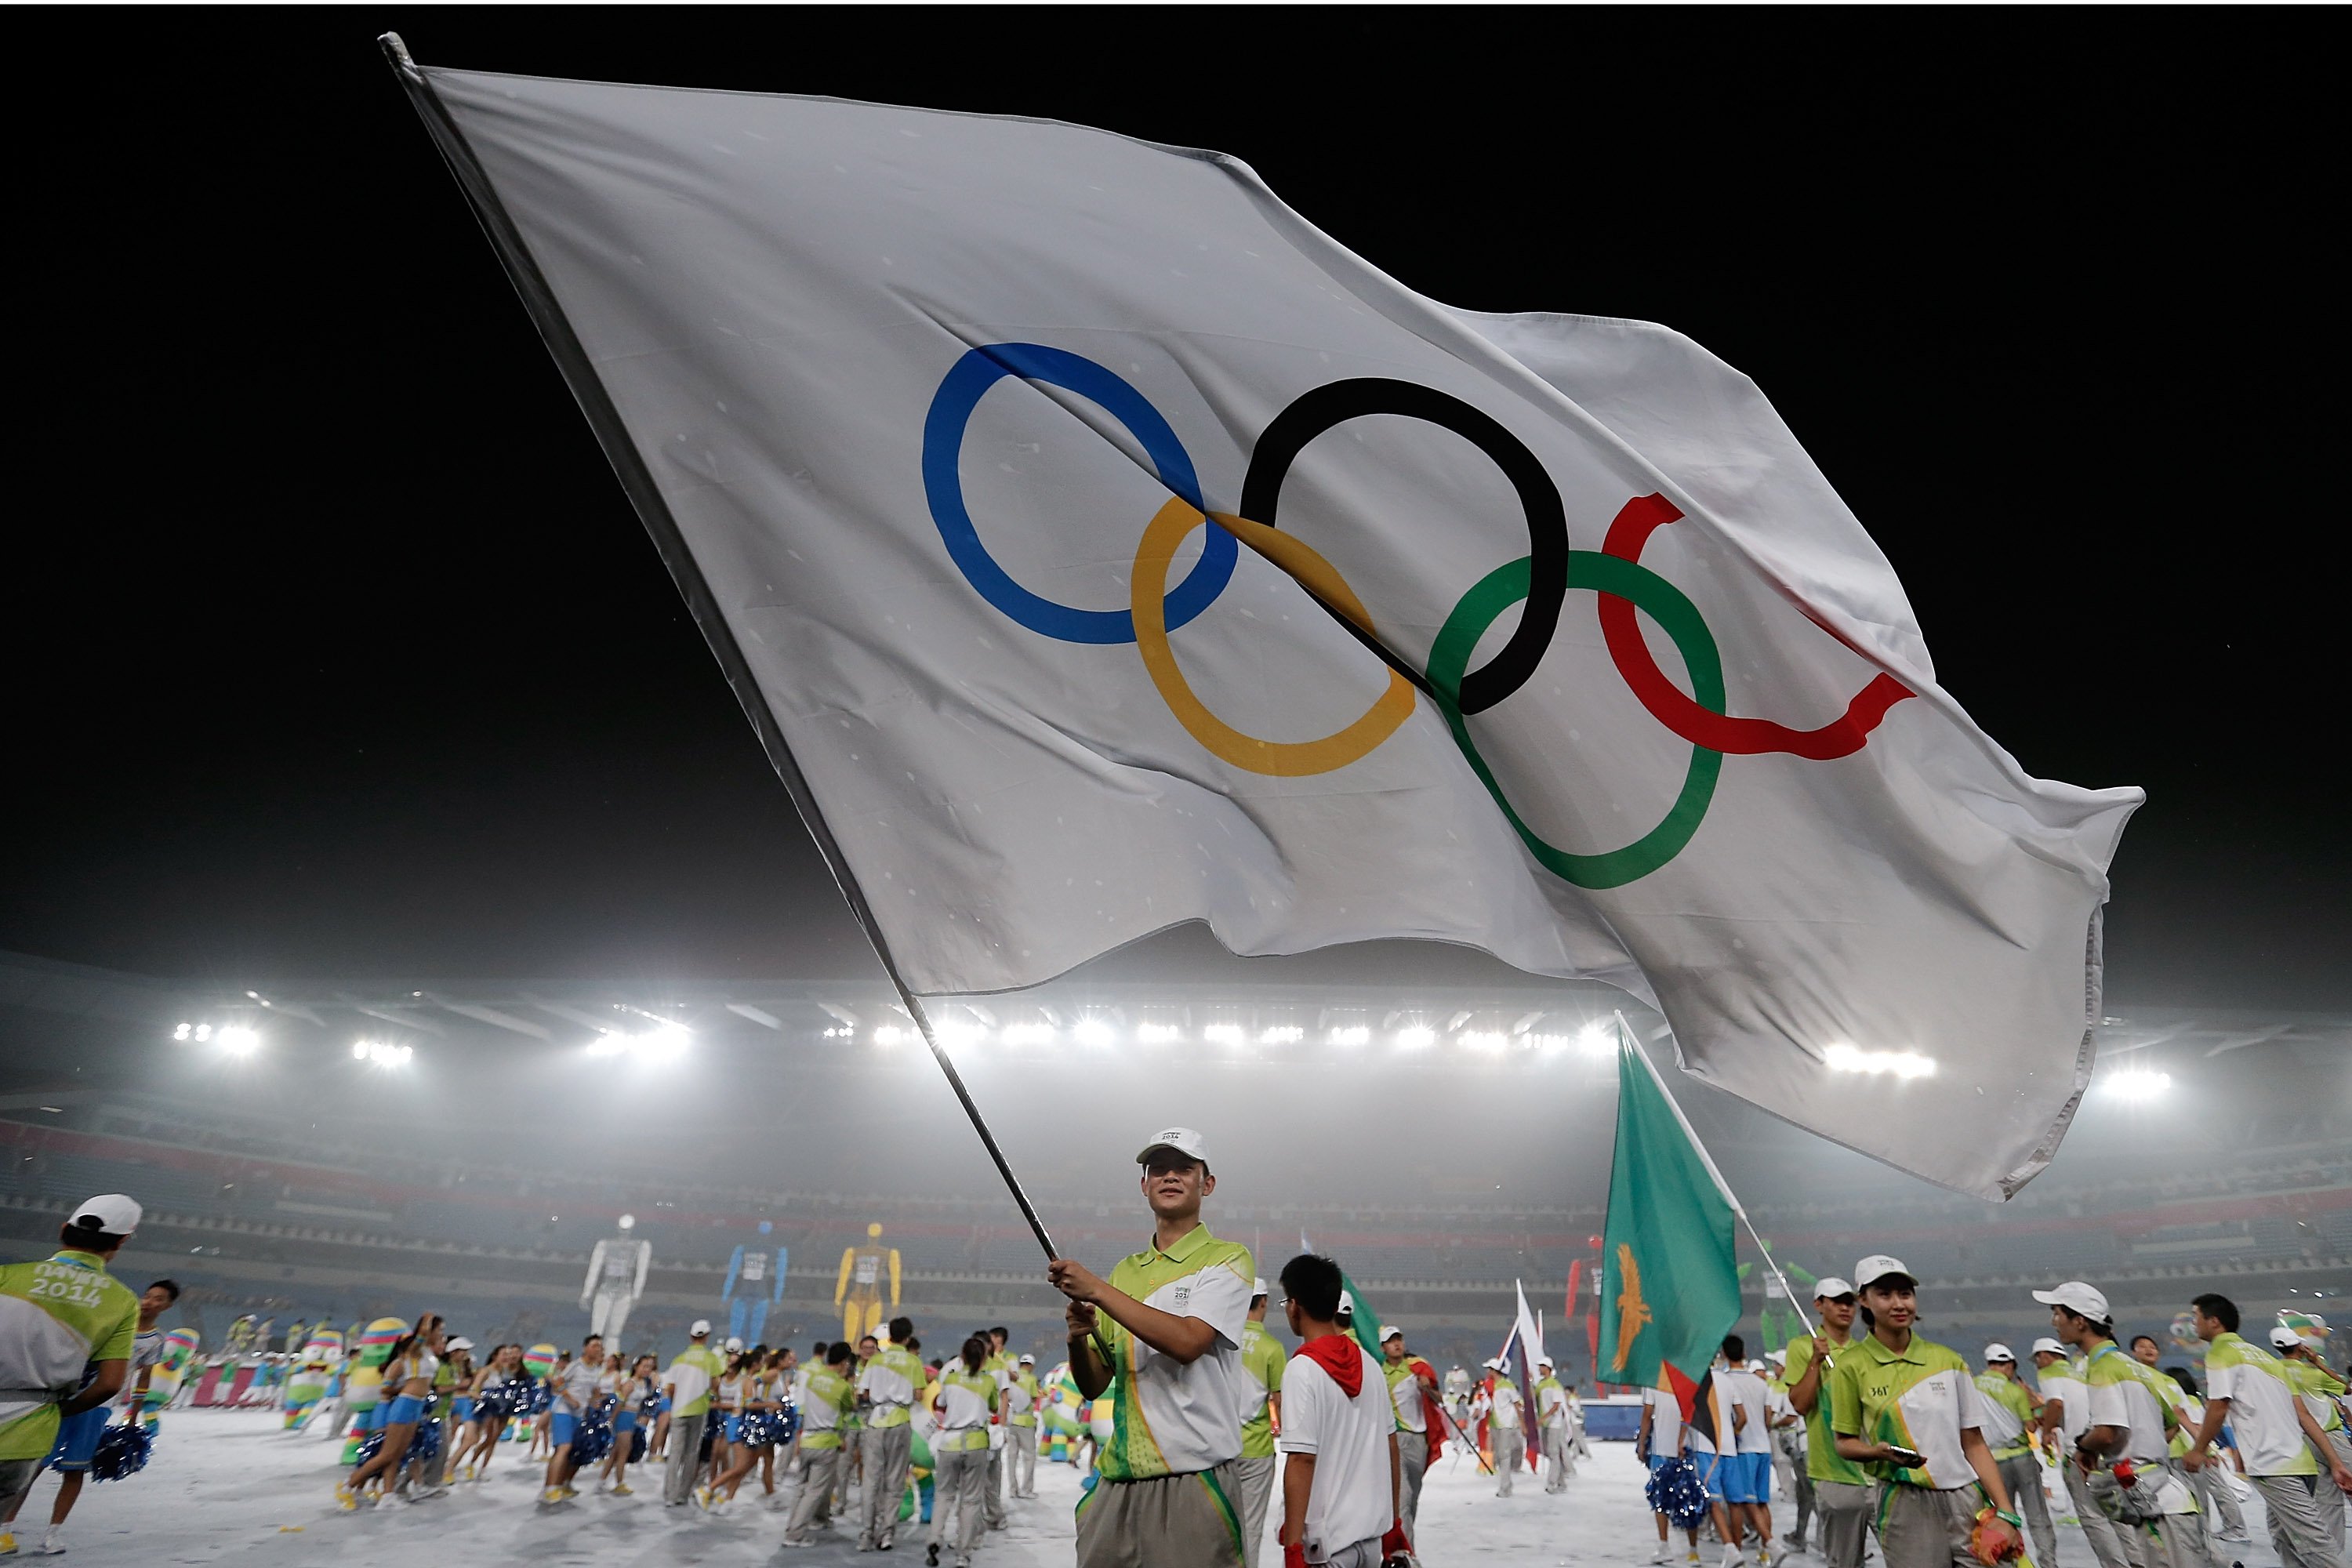 Олимпийские игры переводят на уровень «hard»